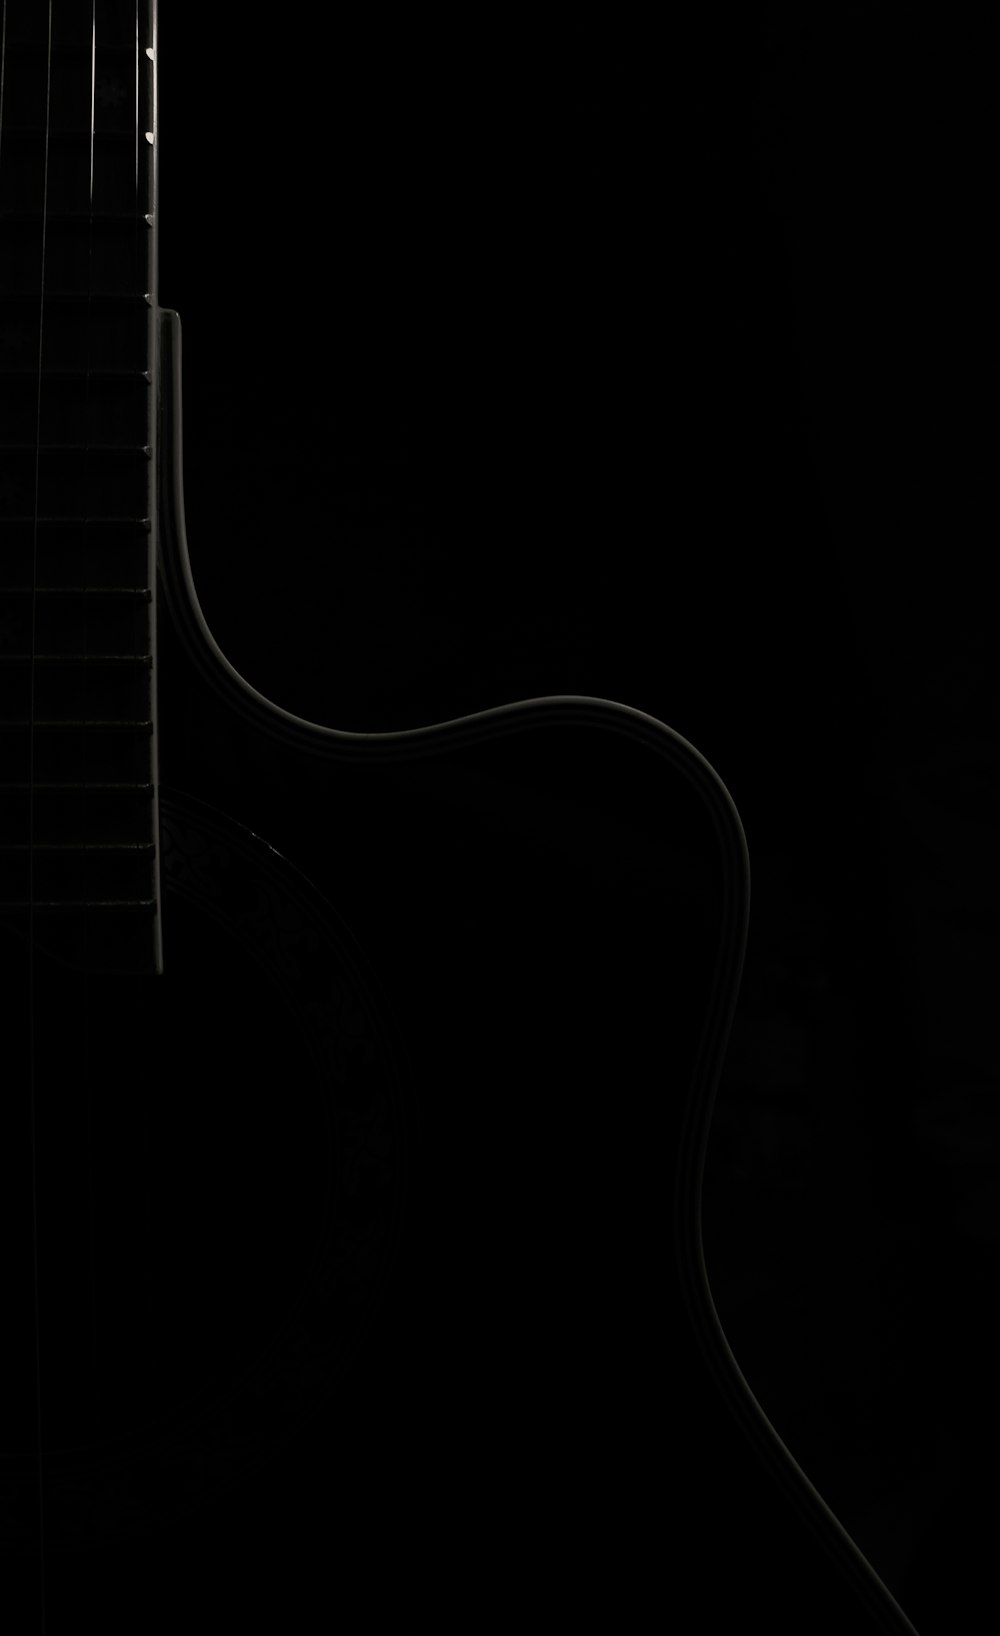 Corde de guitare noir et blanc